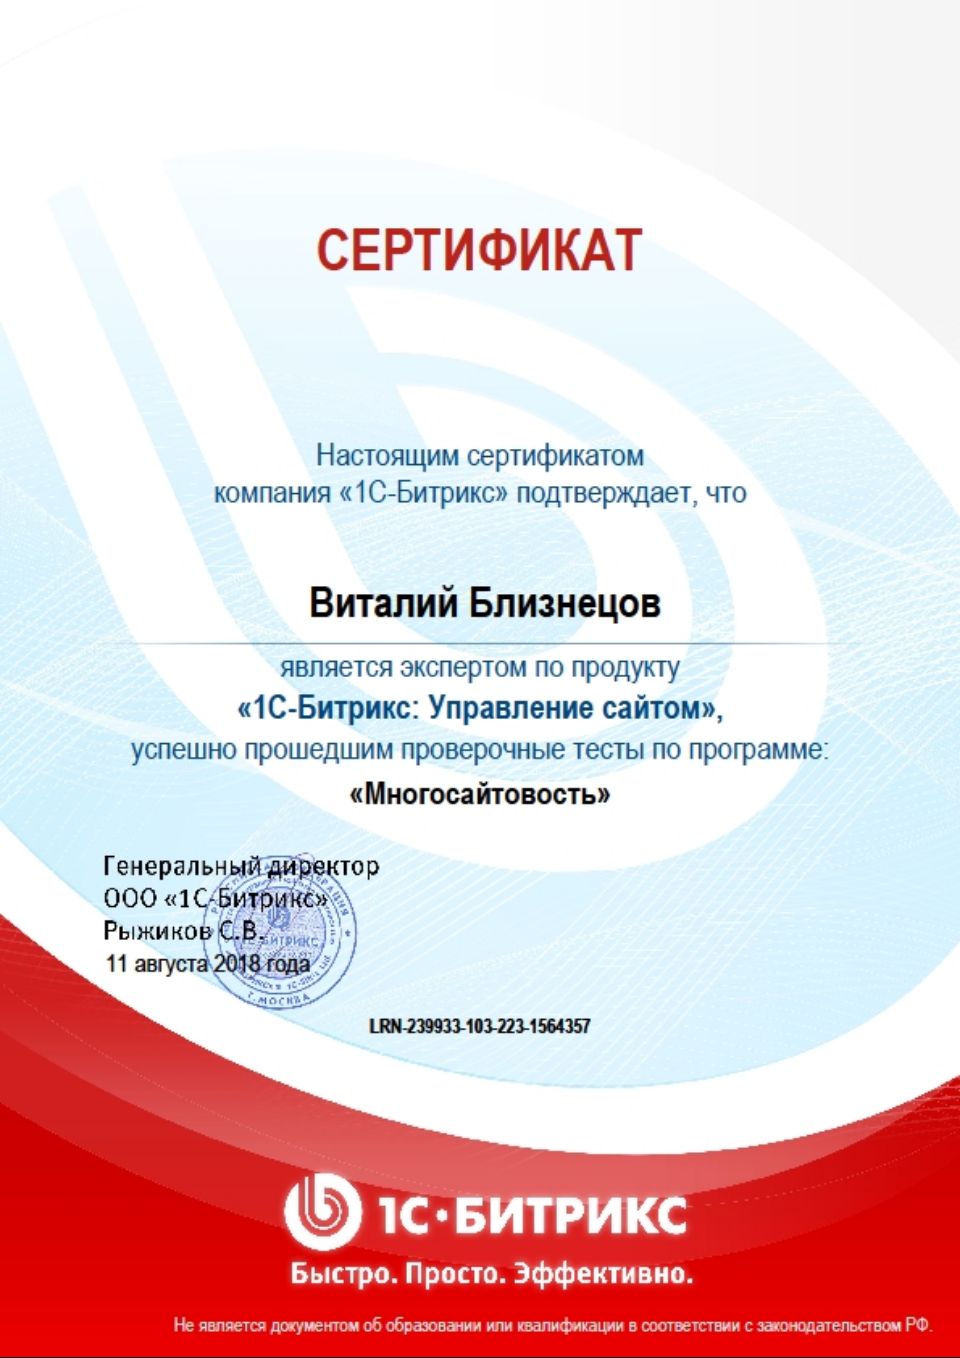 Сертификат Битрикс-Многосайтовость